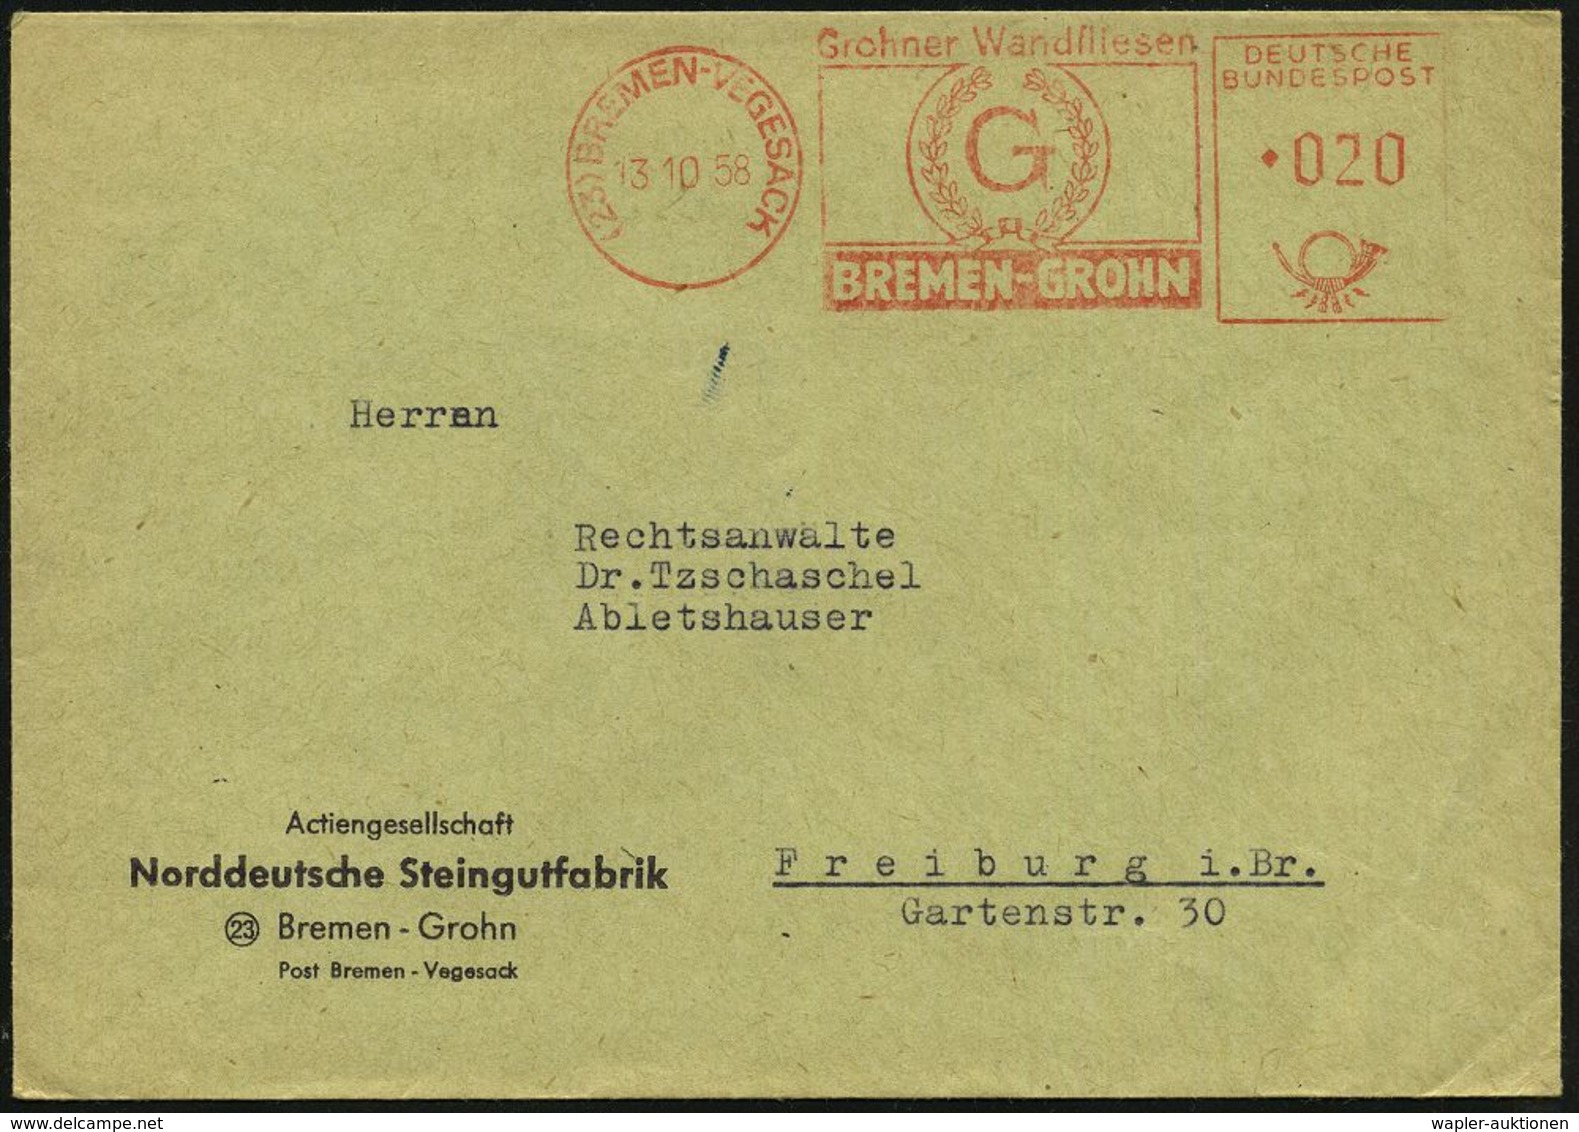 TON / STEINGUT / KACHELOFEN : (23) BREMEN-VEGESACK/ Grohner Wandfliesen 1958 (13.10.) AFS (Logo) Firmen-Bf: Norddeutsche - Porcellana